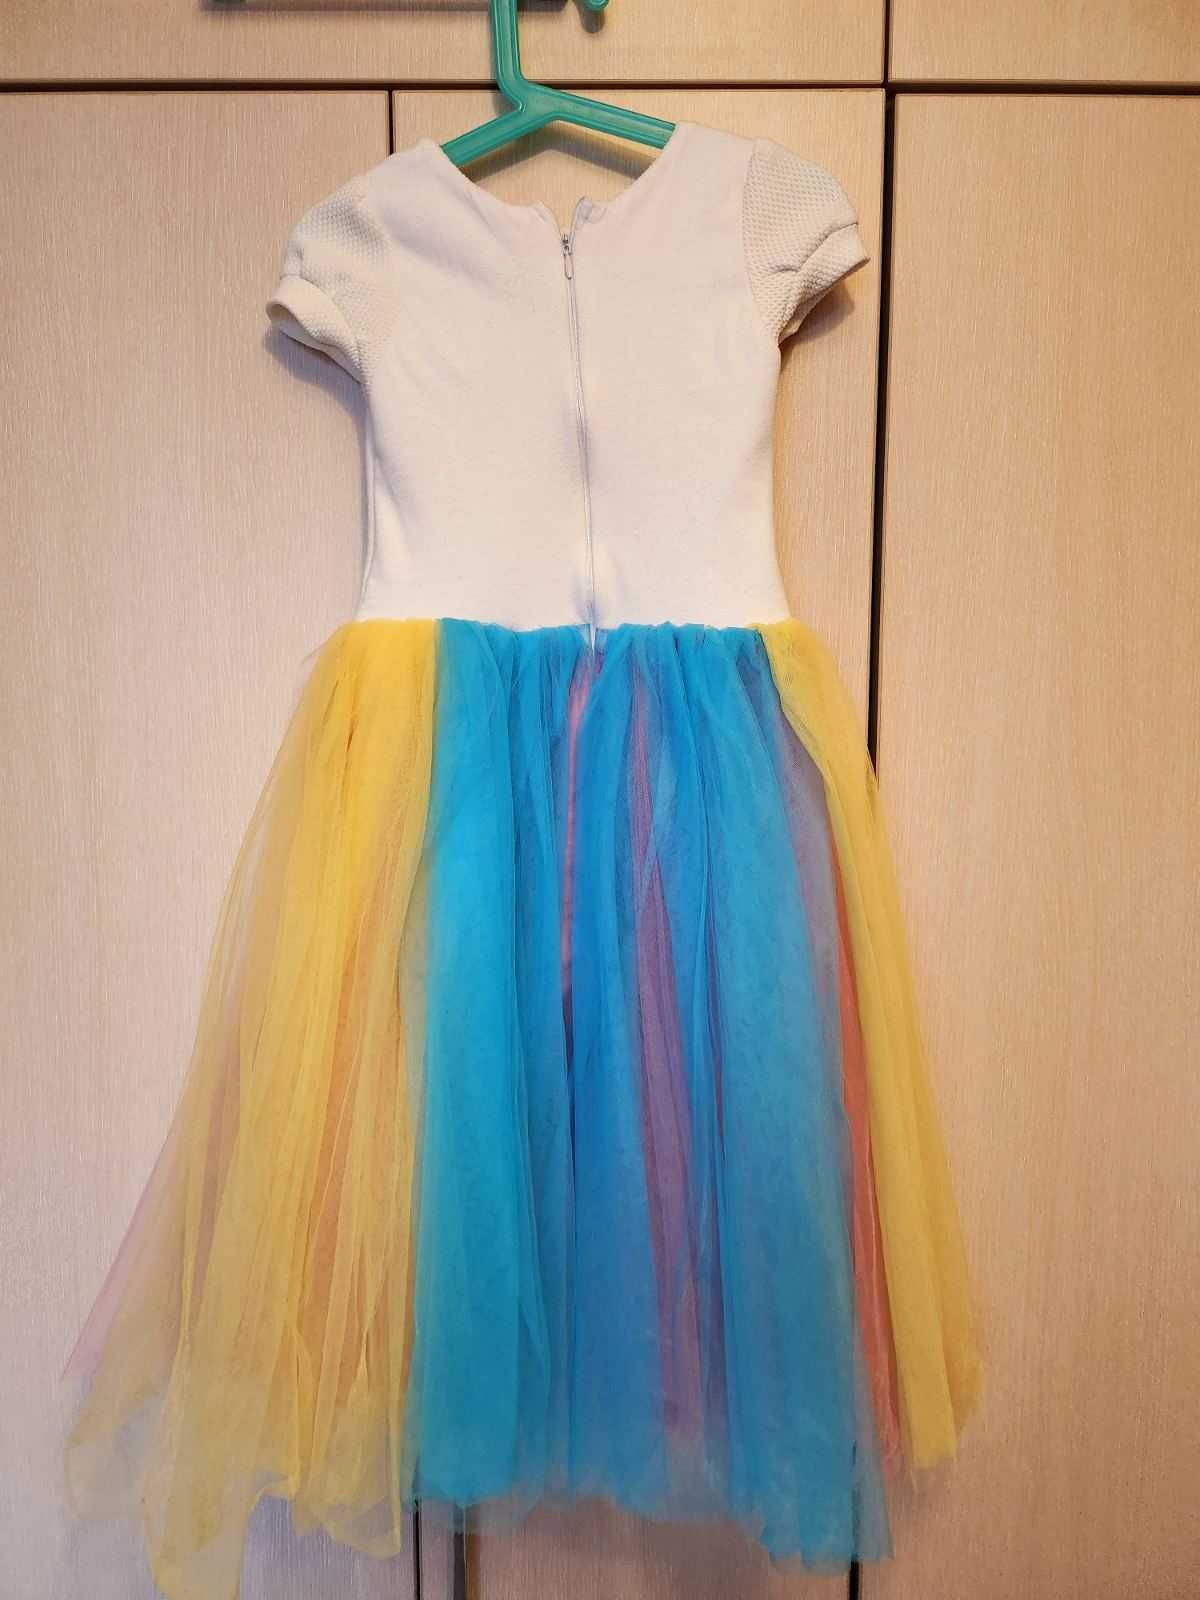 Официална детска рокля с принцеса Аврора от Модно&Модерно р-р 110